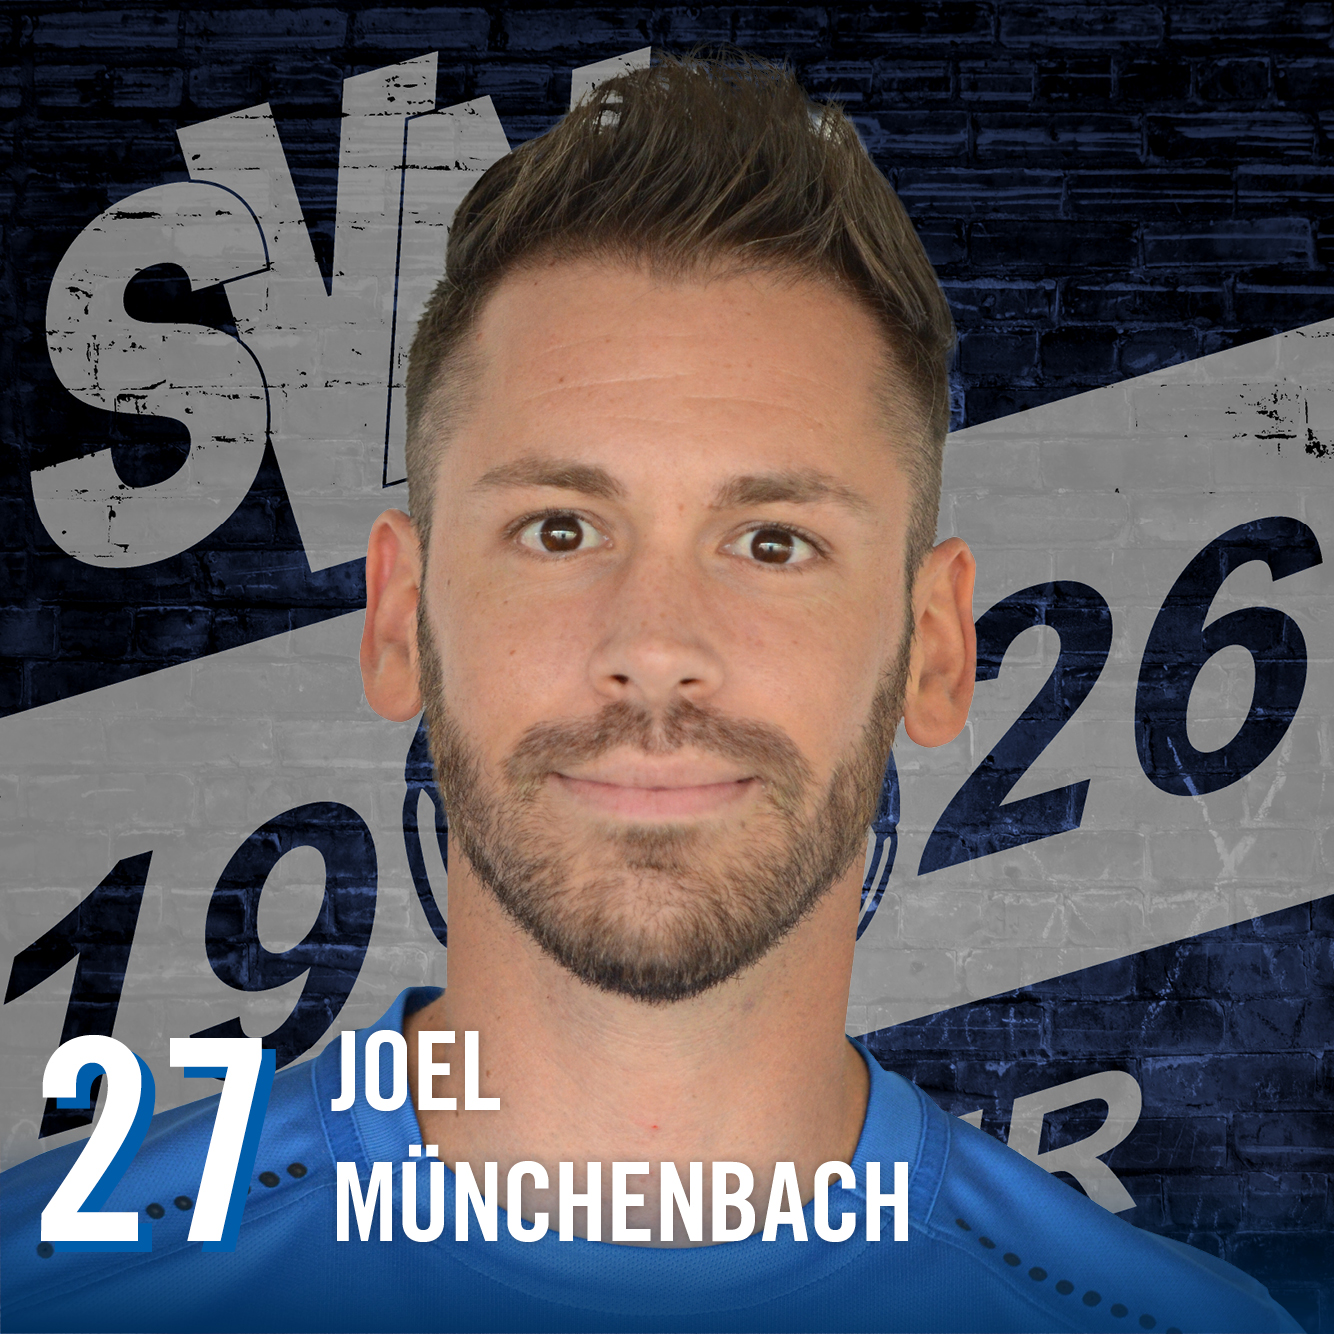 Joel Münchenbach